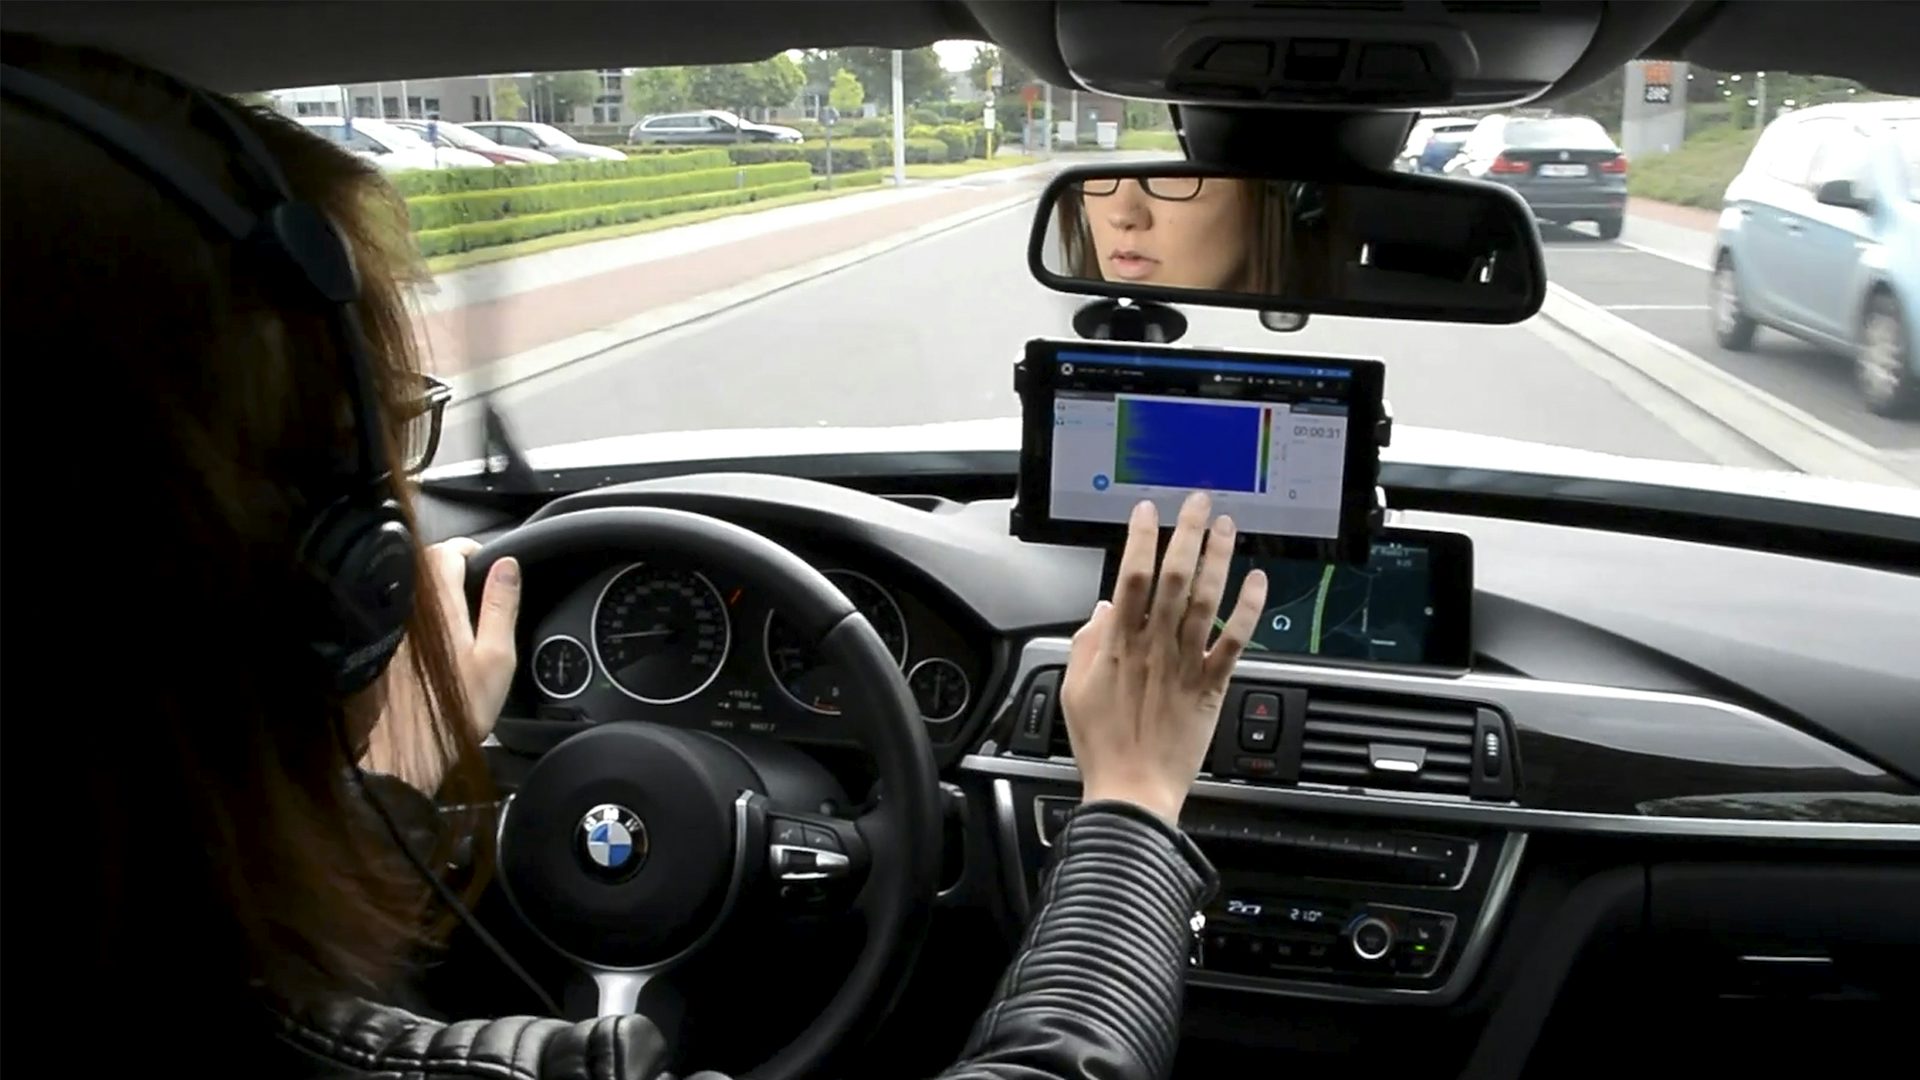 Kobieta prowadząca samochód podczas przeprowadzania testów NVH przy użyciu urządzeń.